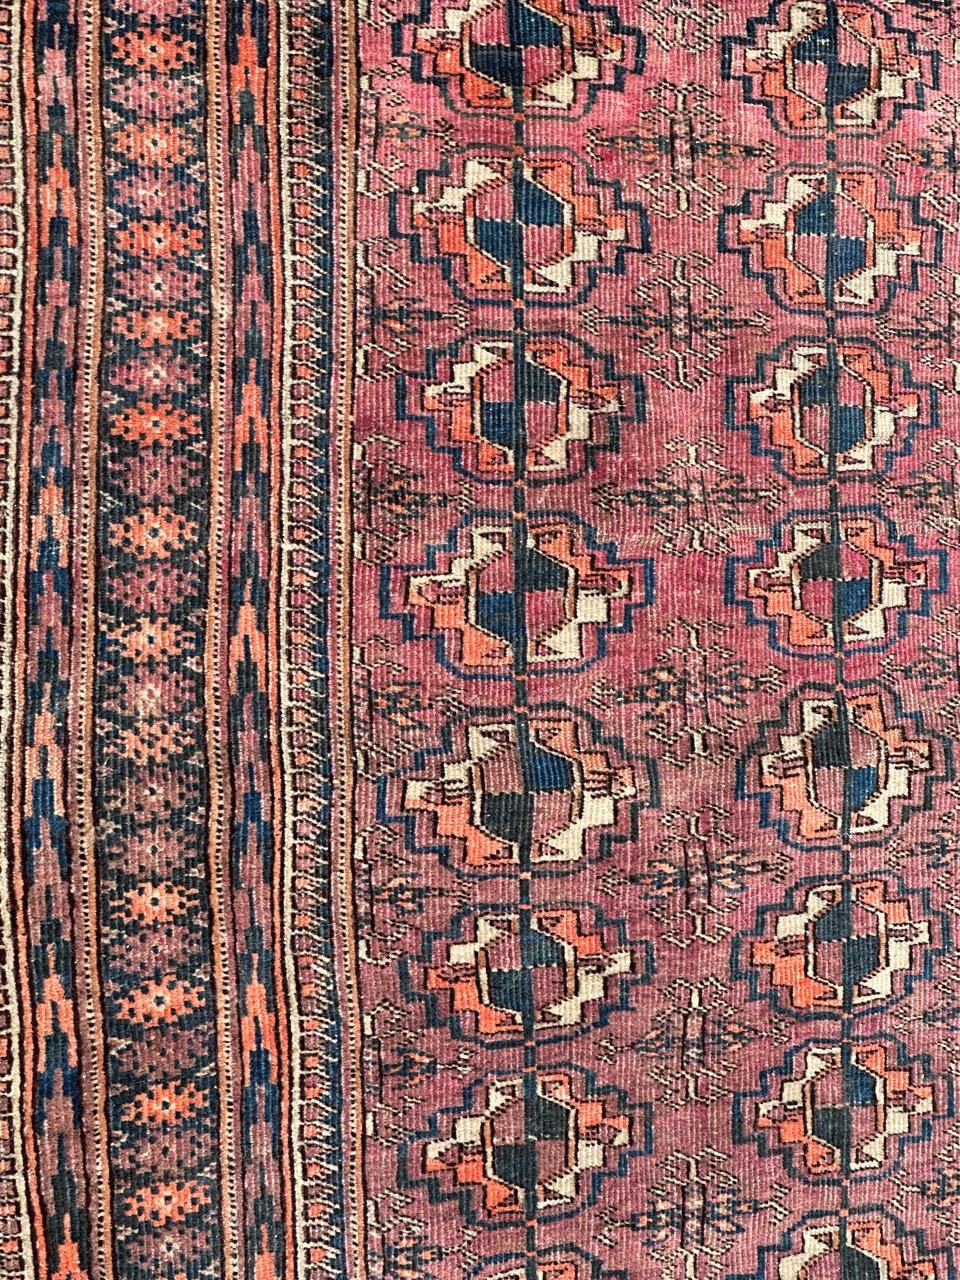 Magnifique tapis turkmène du début du 20ème siècle avec de jolis motifs géométriques et traditionnels des tapis de Bokhara et de belles couleurs naturelles, entièrement noué à la main avec de la laine sur une base de laine. 

✨✨✨
